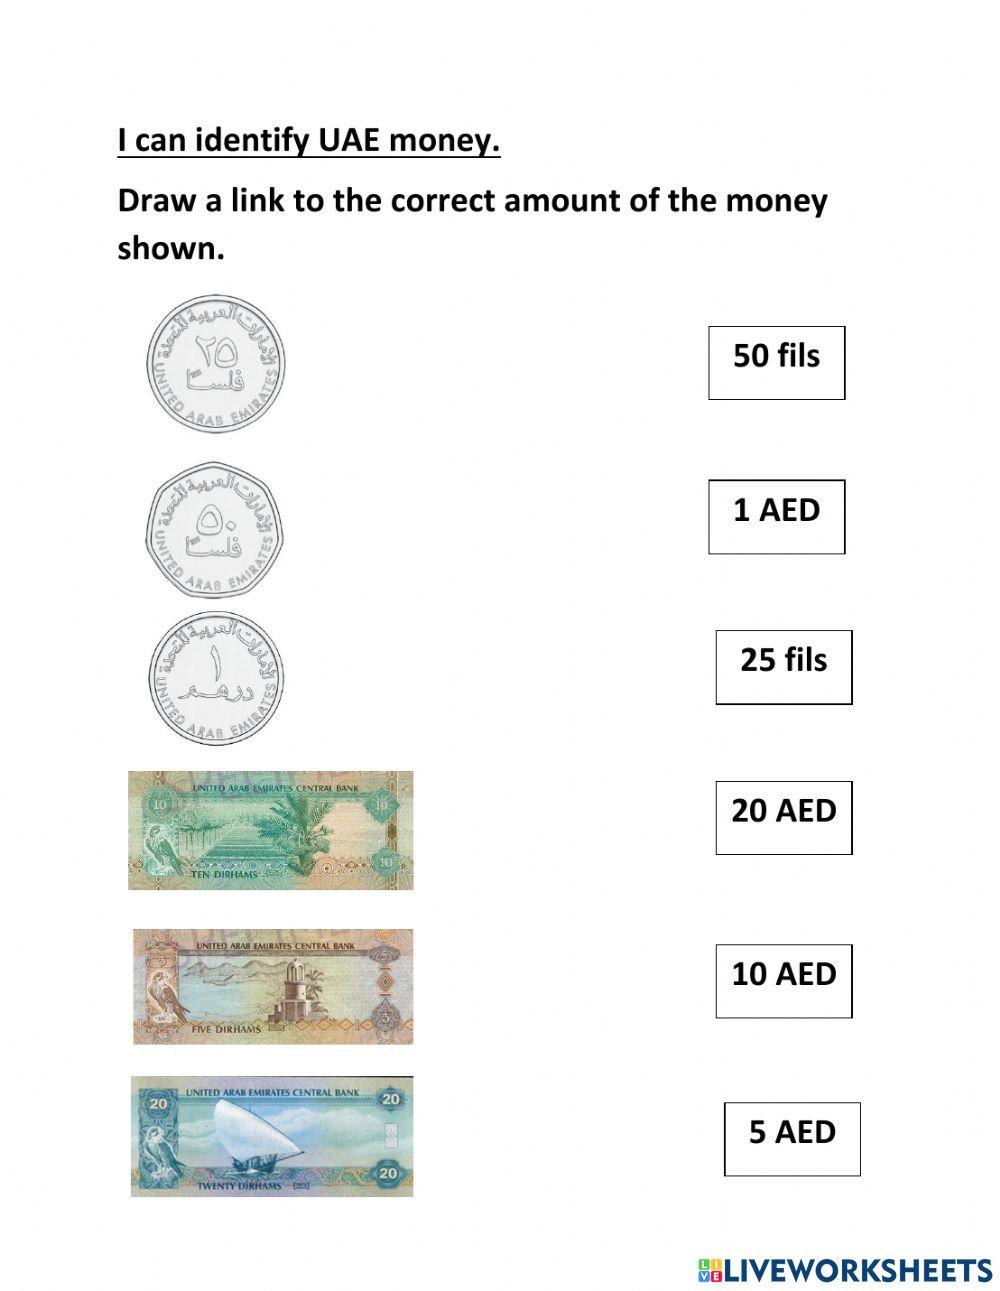 Identify UAE money